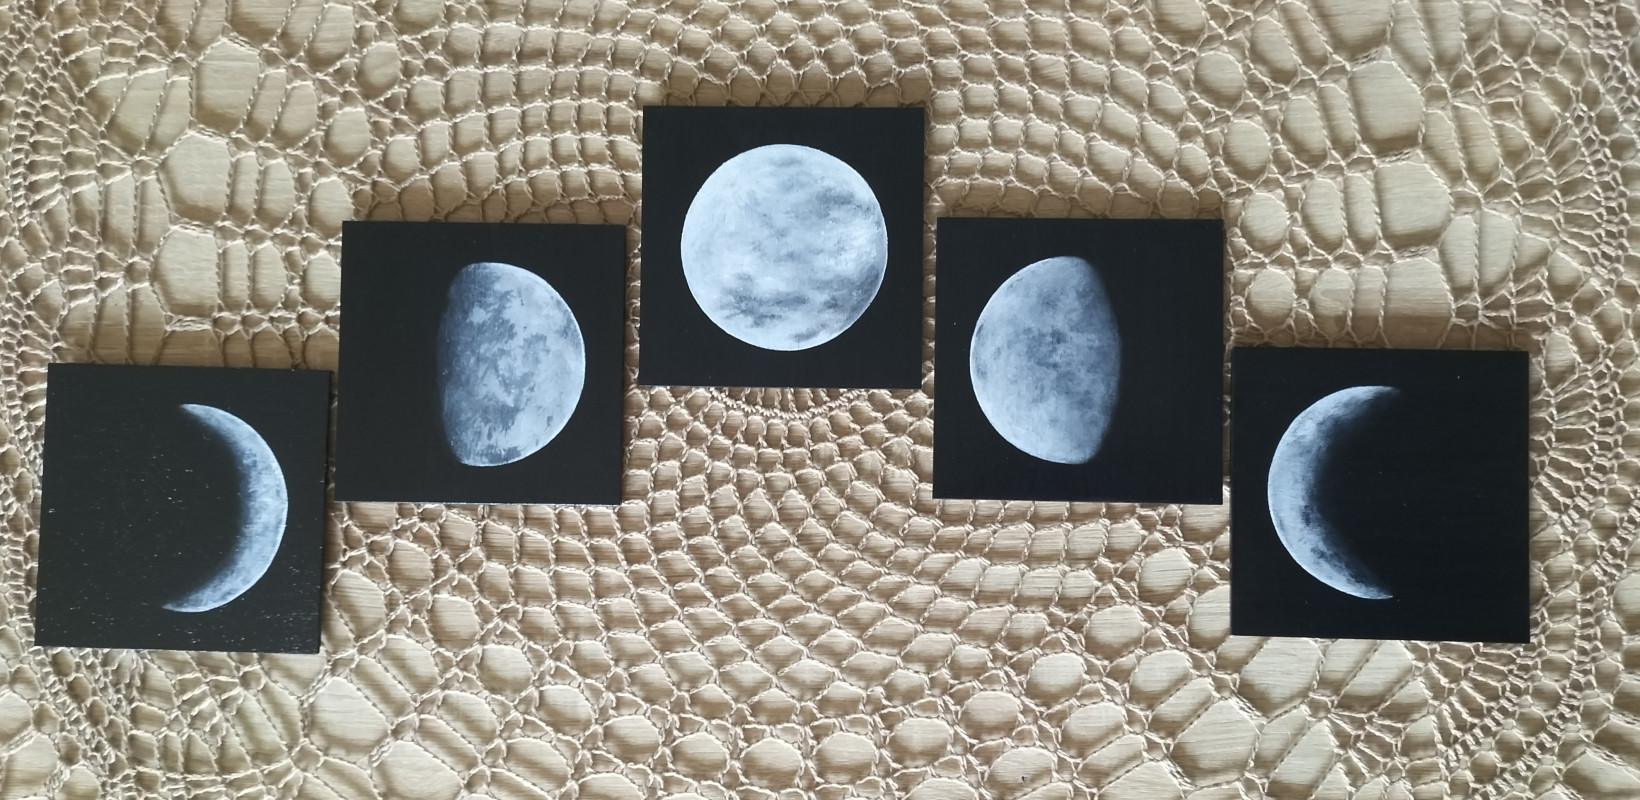 Fazy księżyca - zastaw magnesów_photo1